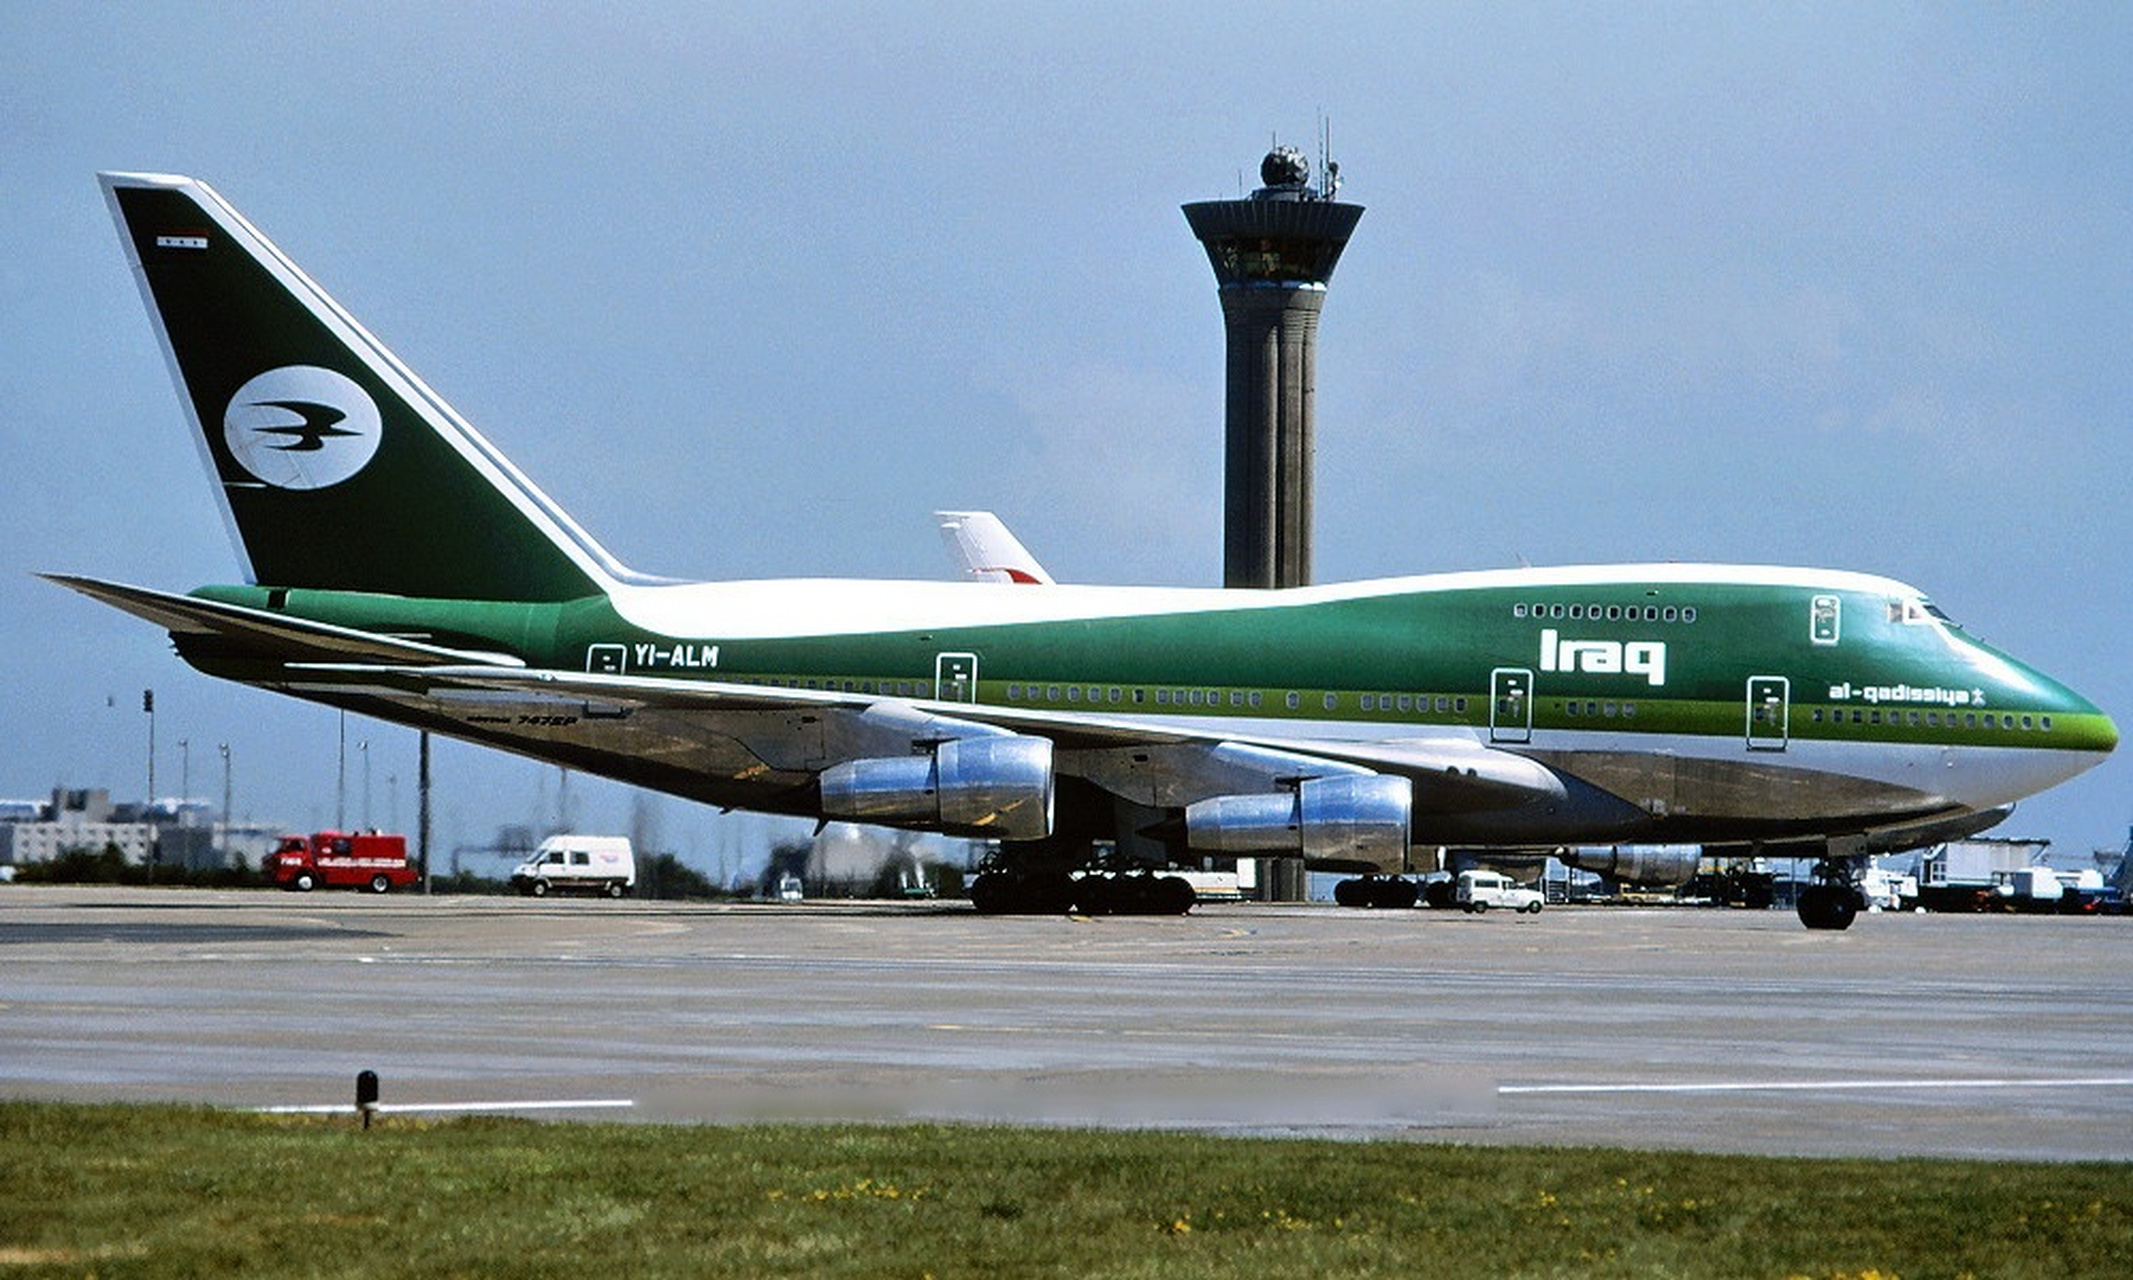 1989年7月1日停在法国巴黎机场的伊拉克航空al-qadisslya号波音747sp